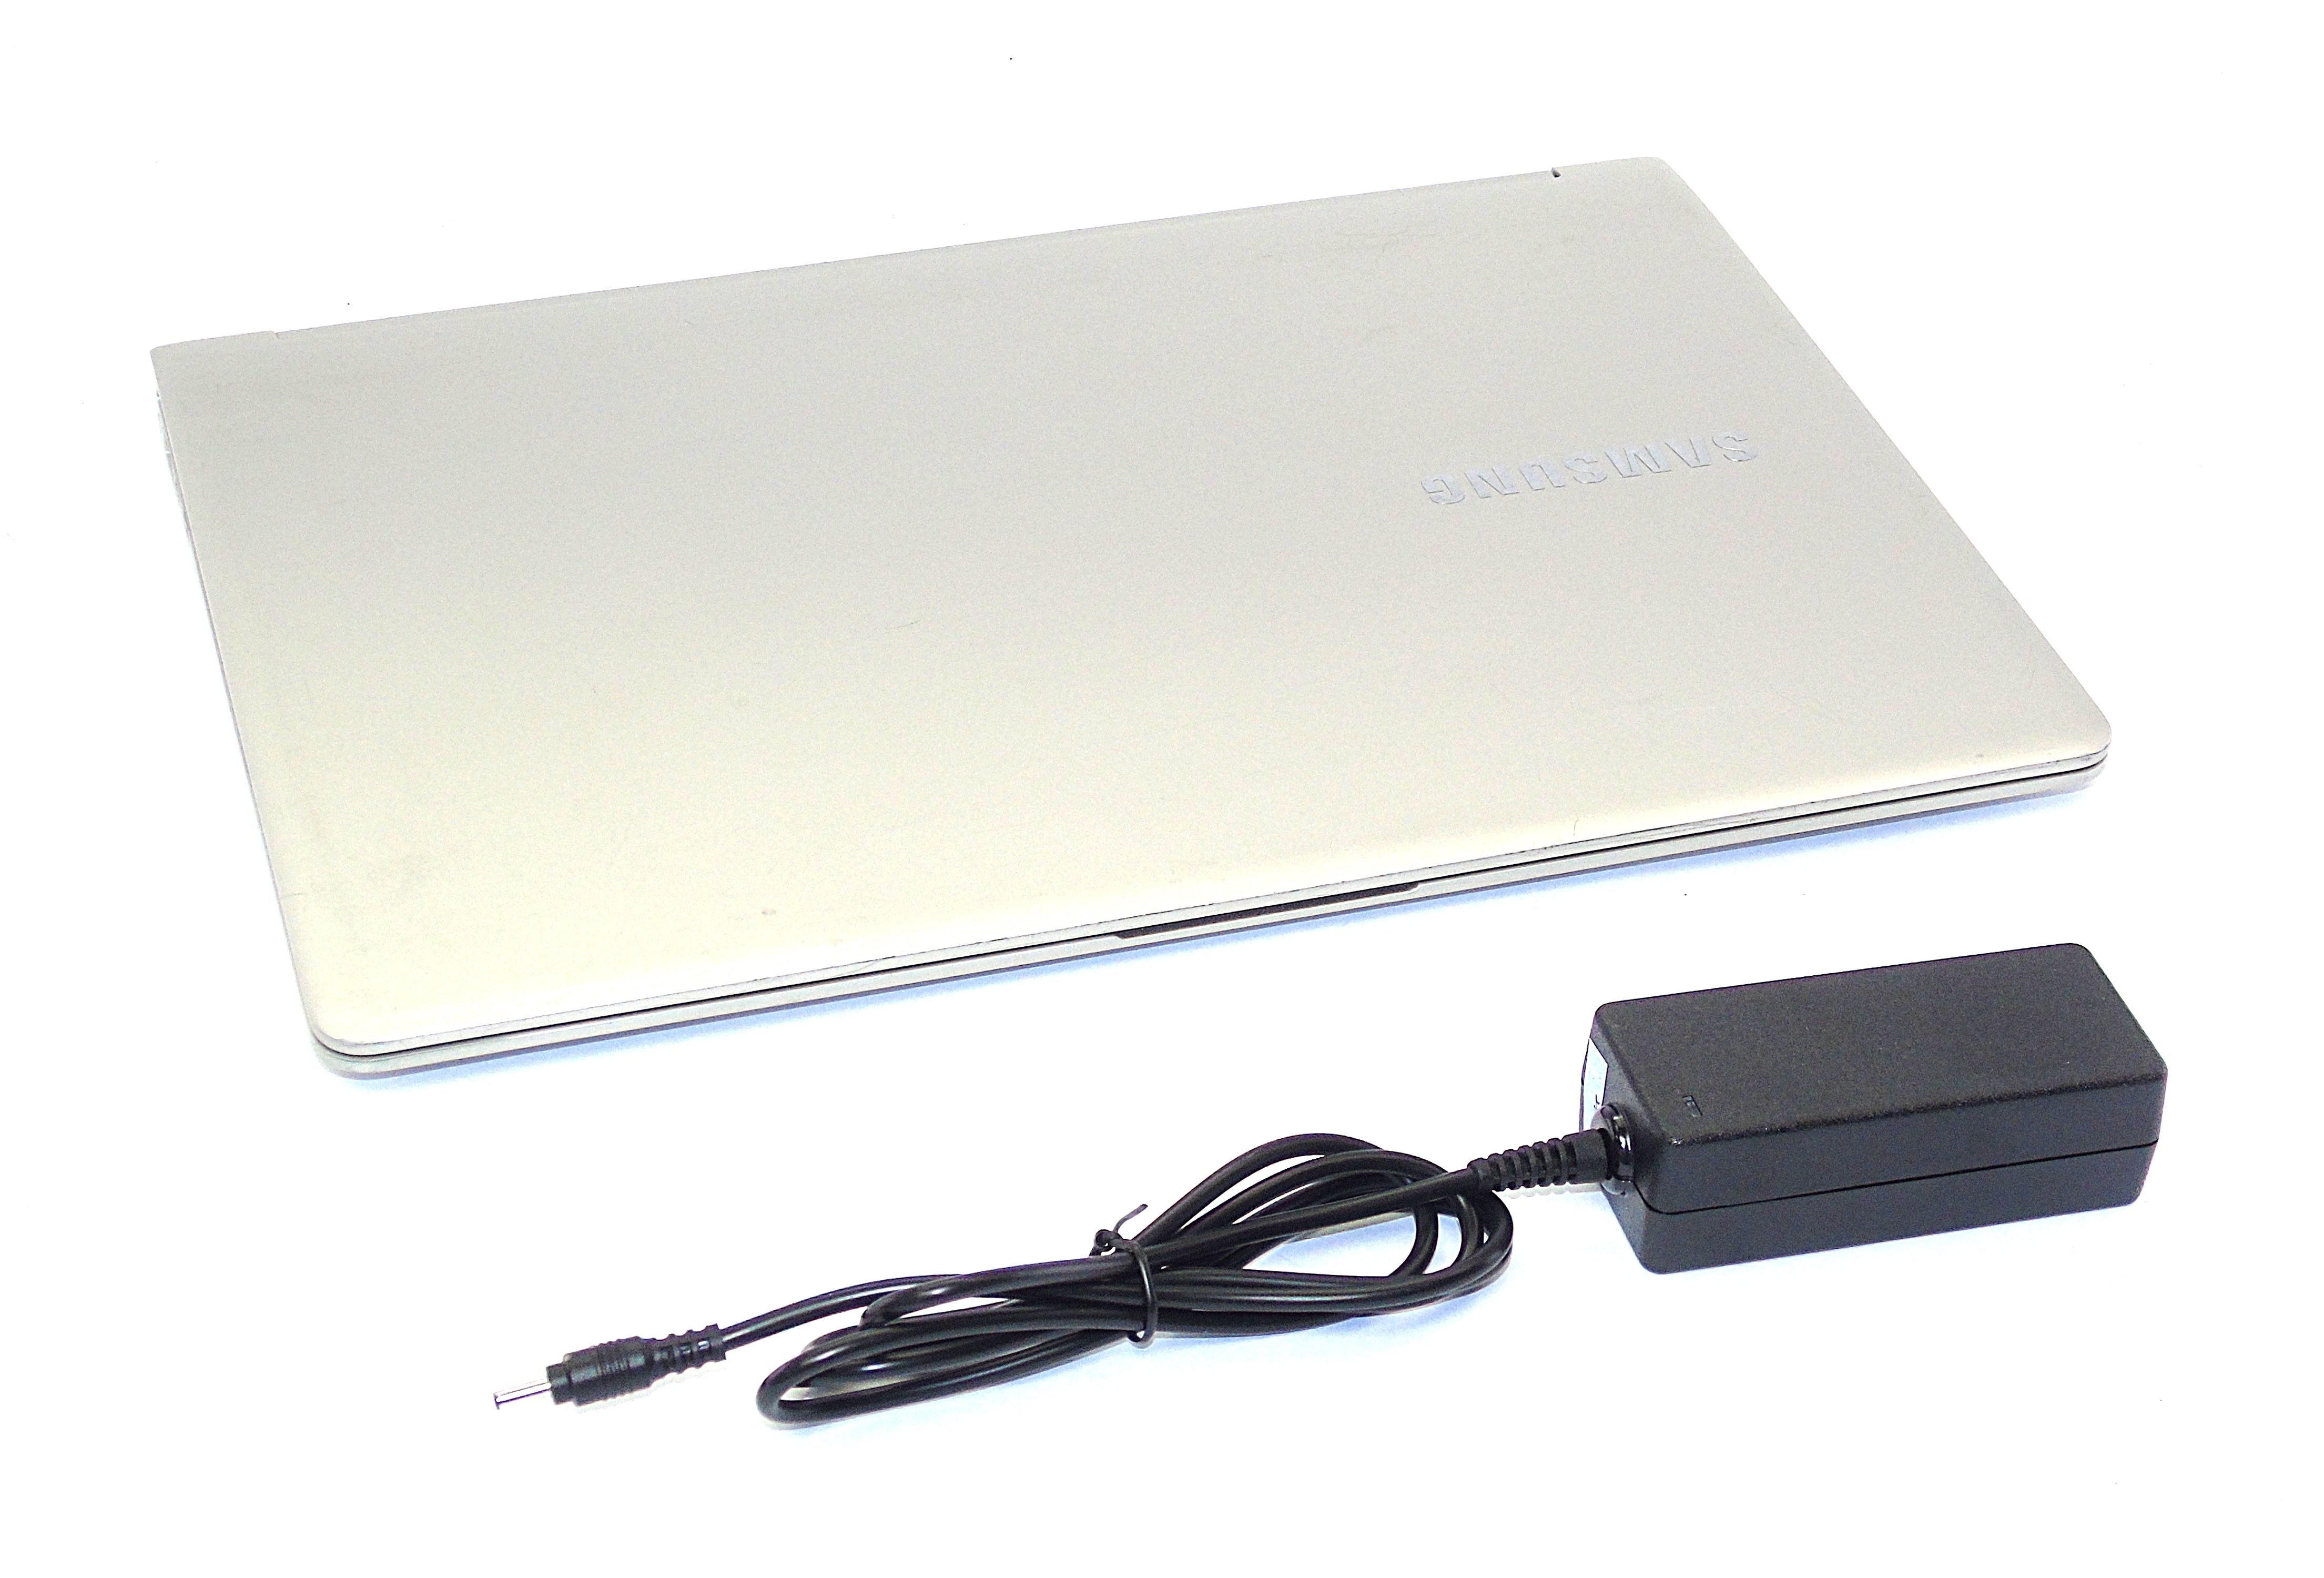 Samsung NP900X3K Laptop, 13.3" Intel® Core™ i5, 8GB RAM, 256GB SSD